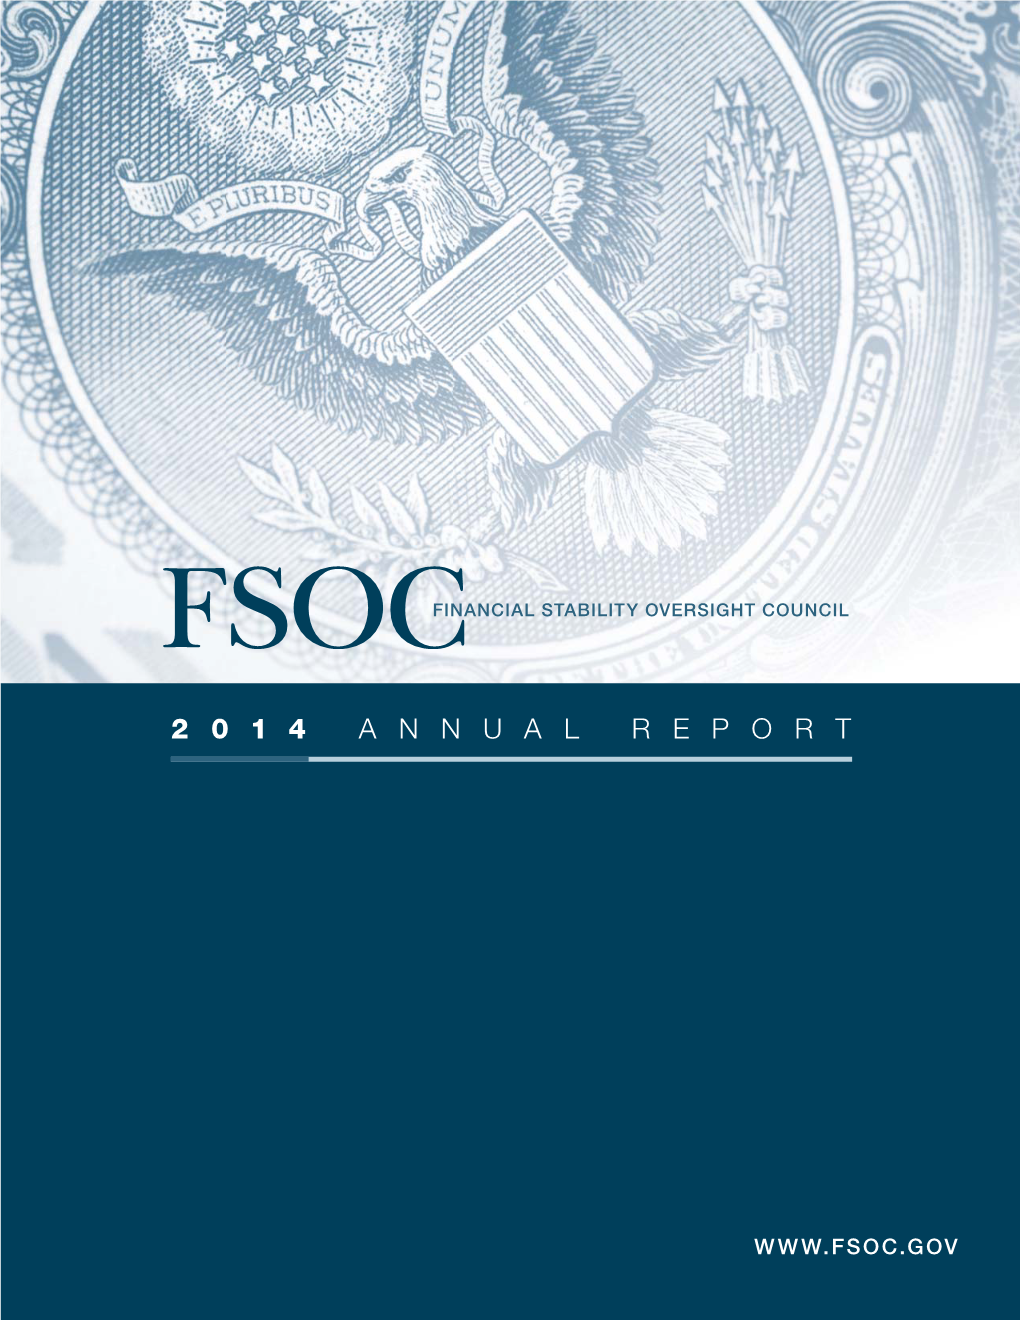 FSOC 2014 Annual Report